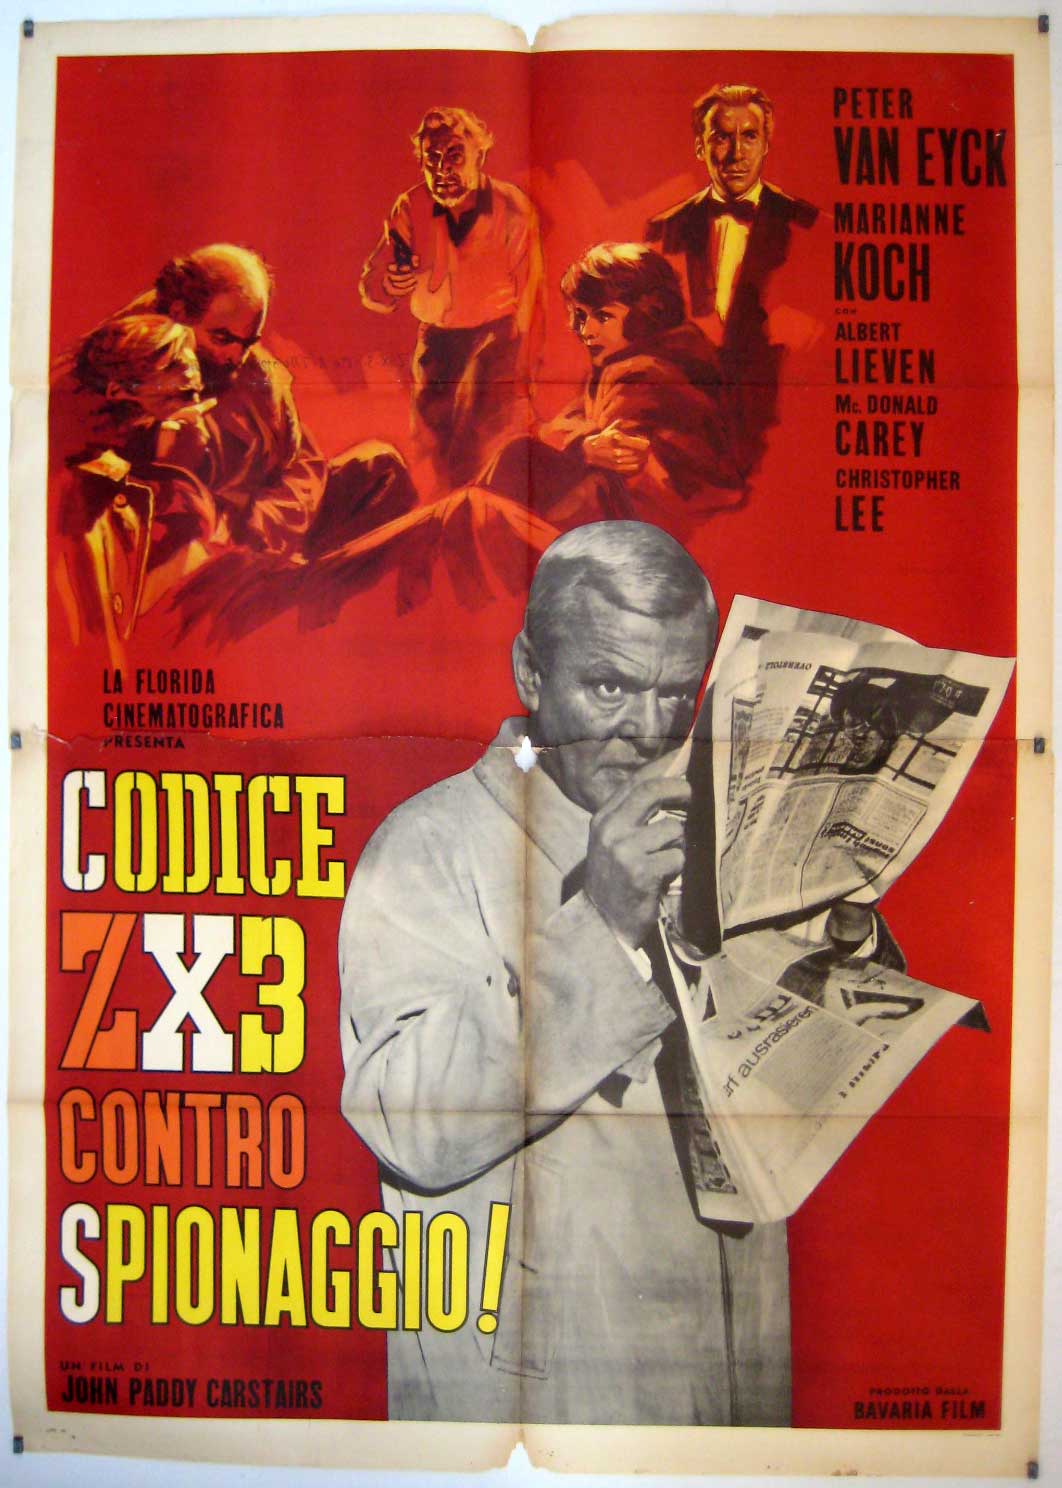 CODICE ZX3 CONTRO SPIONAGGIO